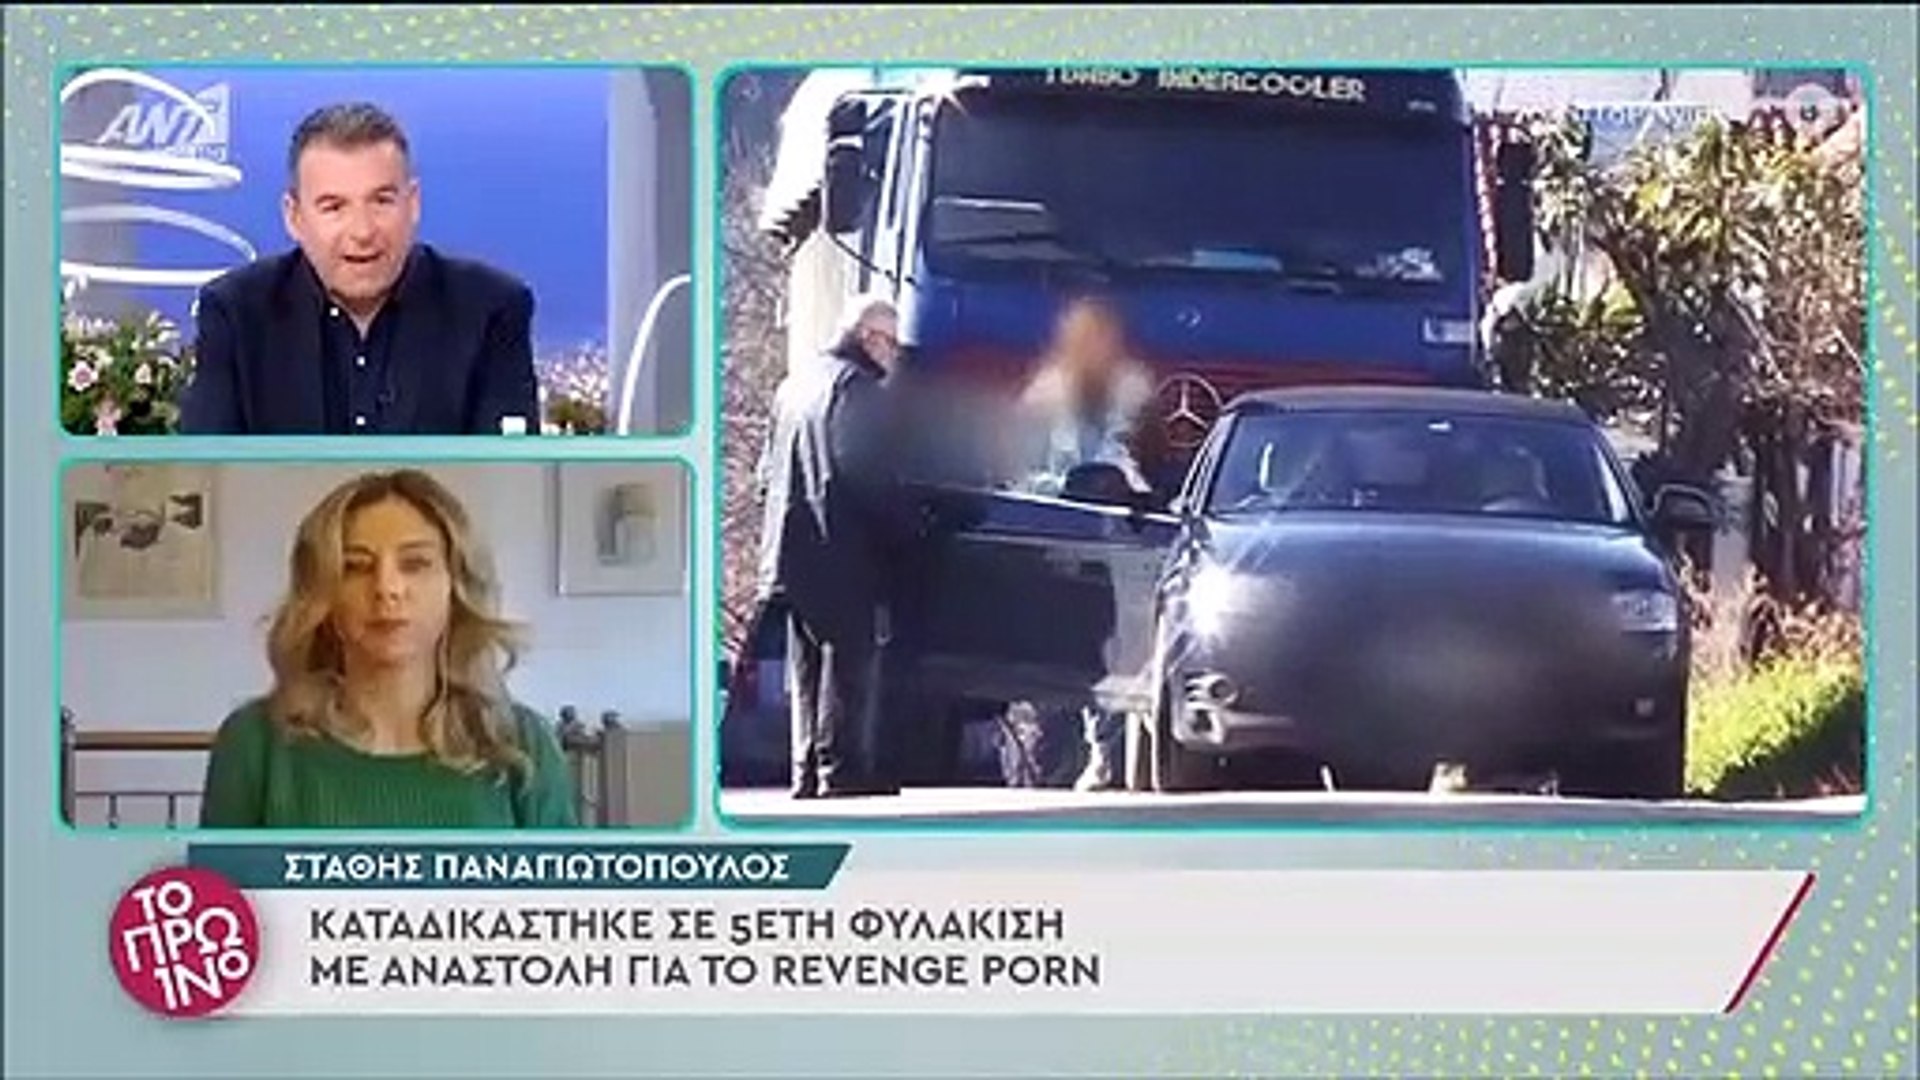 Τα πρώτα πλάνα του Στάθη Παναγιωτόπουλου μετά την απόφαση του δικαστηρίου  για 5 χρόνια φυλάκιση - video Dailymotion